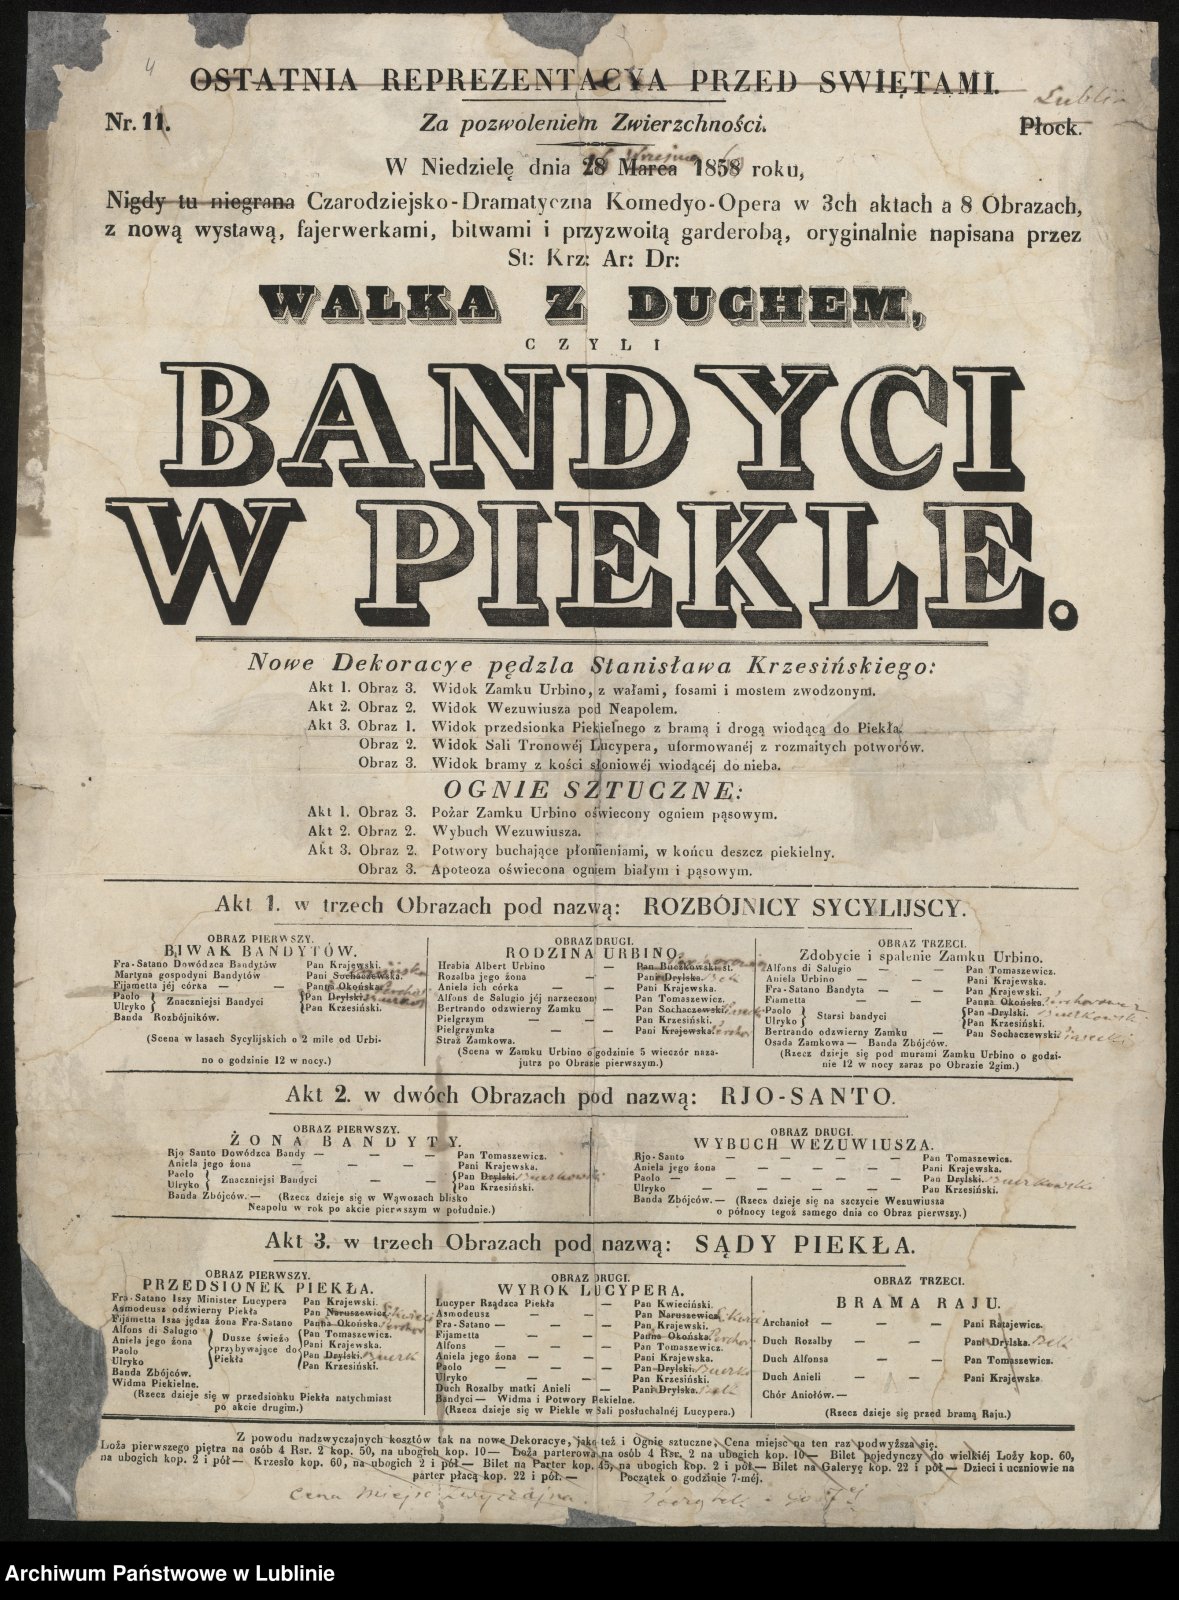 Афіша вистави «Bandyci w piekle» («Бандити в пеклі»), 1860 р., зібрання Державного архіву в Любліні.